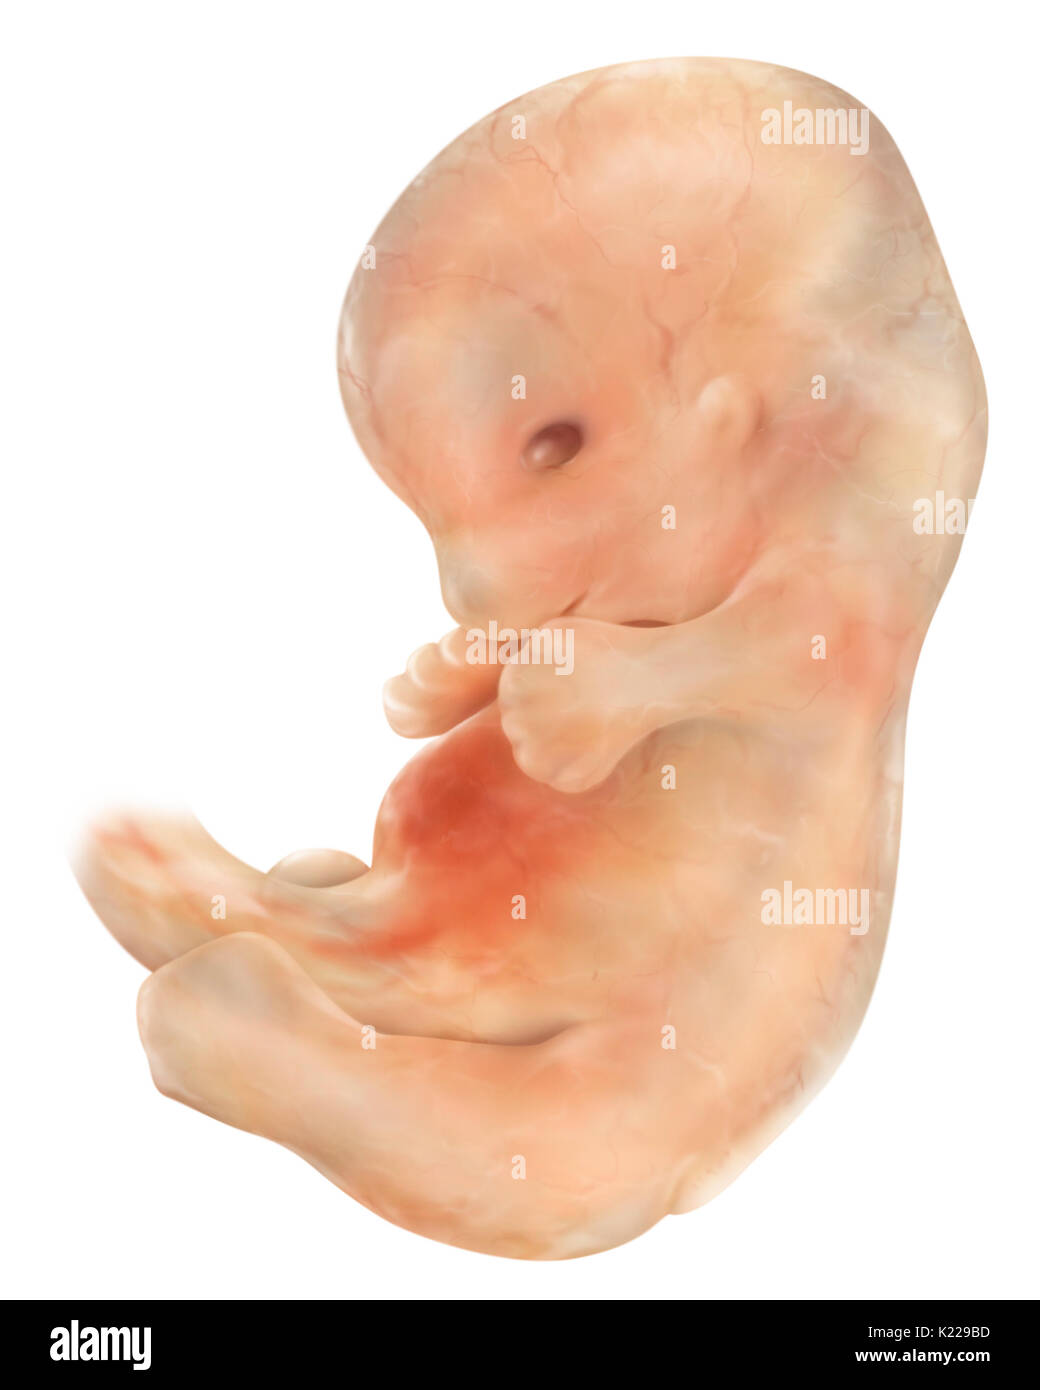 L'embryon de six semaines mesure presque 1⁄2 po (13 mm) et pèse environ 1,5 g. Ses membres sont déjà différenciées et son visage commence à avoir une apparence humaine. Banque D'Images